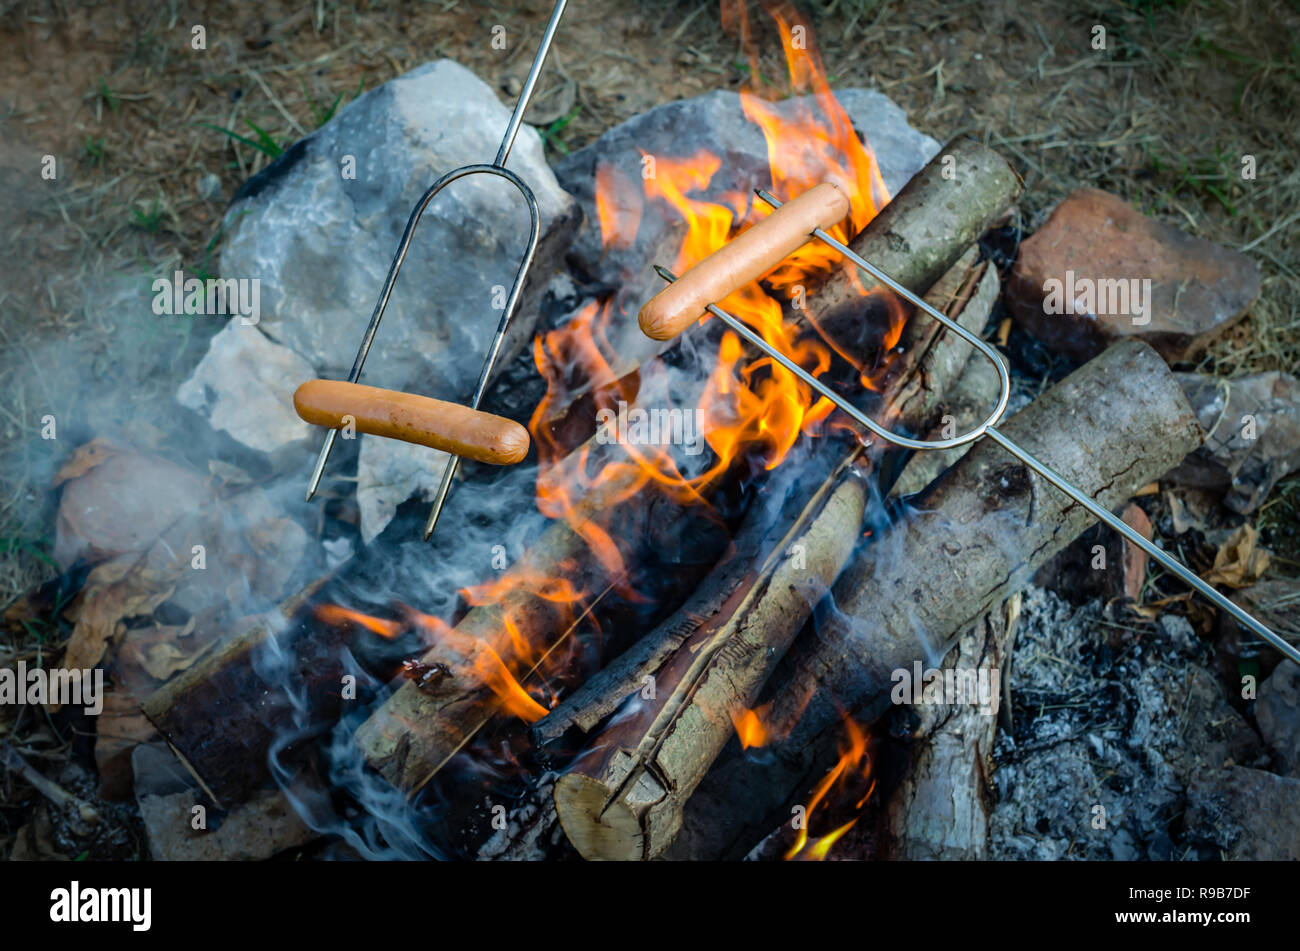 Die Röstung hot dogs über dem Lagerfeuer. Spaß und Entspannung der Zubereitung von Speisen und Camping im Freien. Entspannung und Erholung in der Natur schöne Außenanlage. Stockfoto